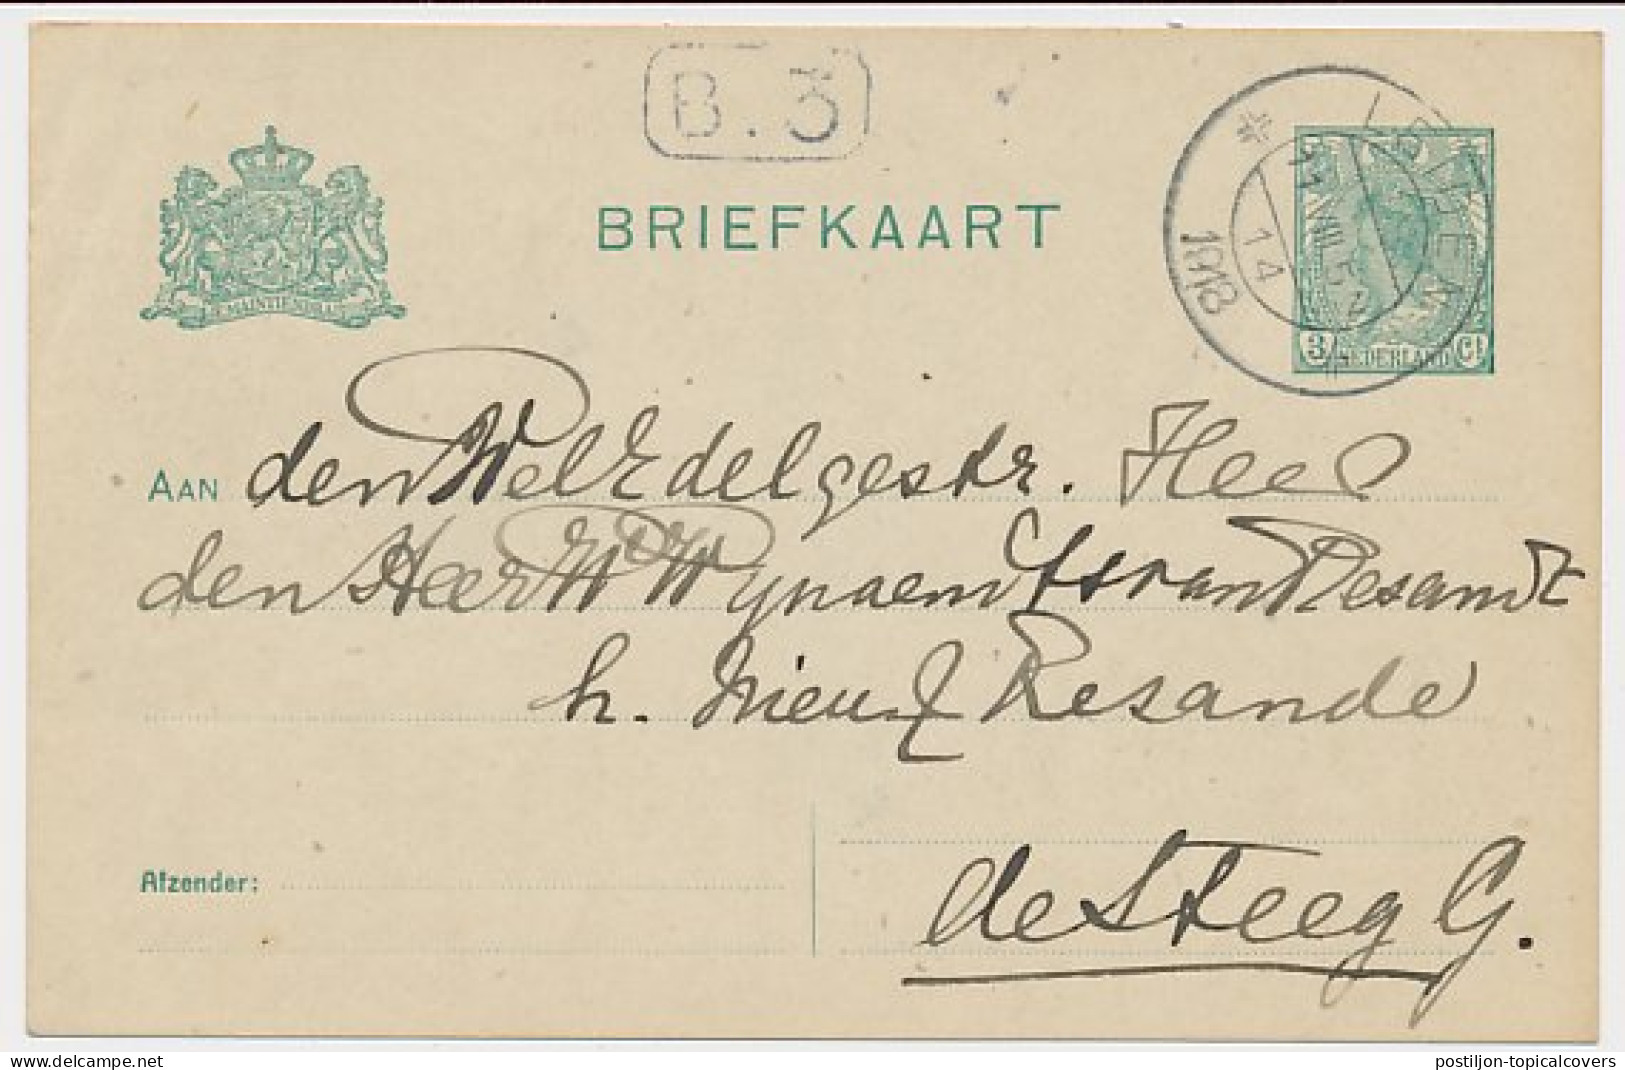 Briefkaart G. 90 A II Leiden - De Steeg 1918 - Ganzsachen